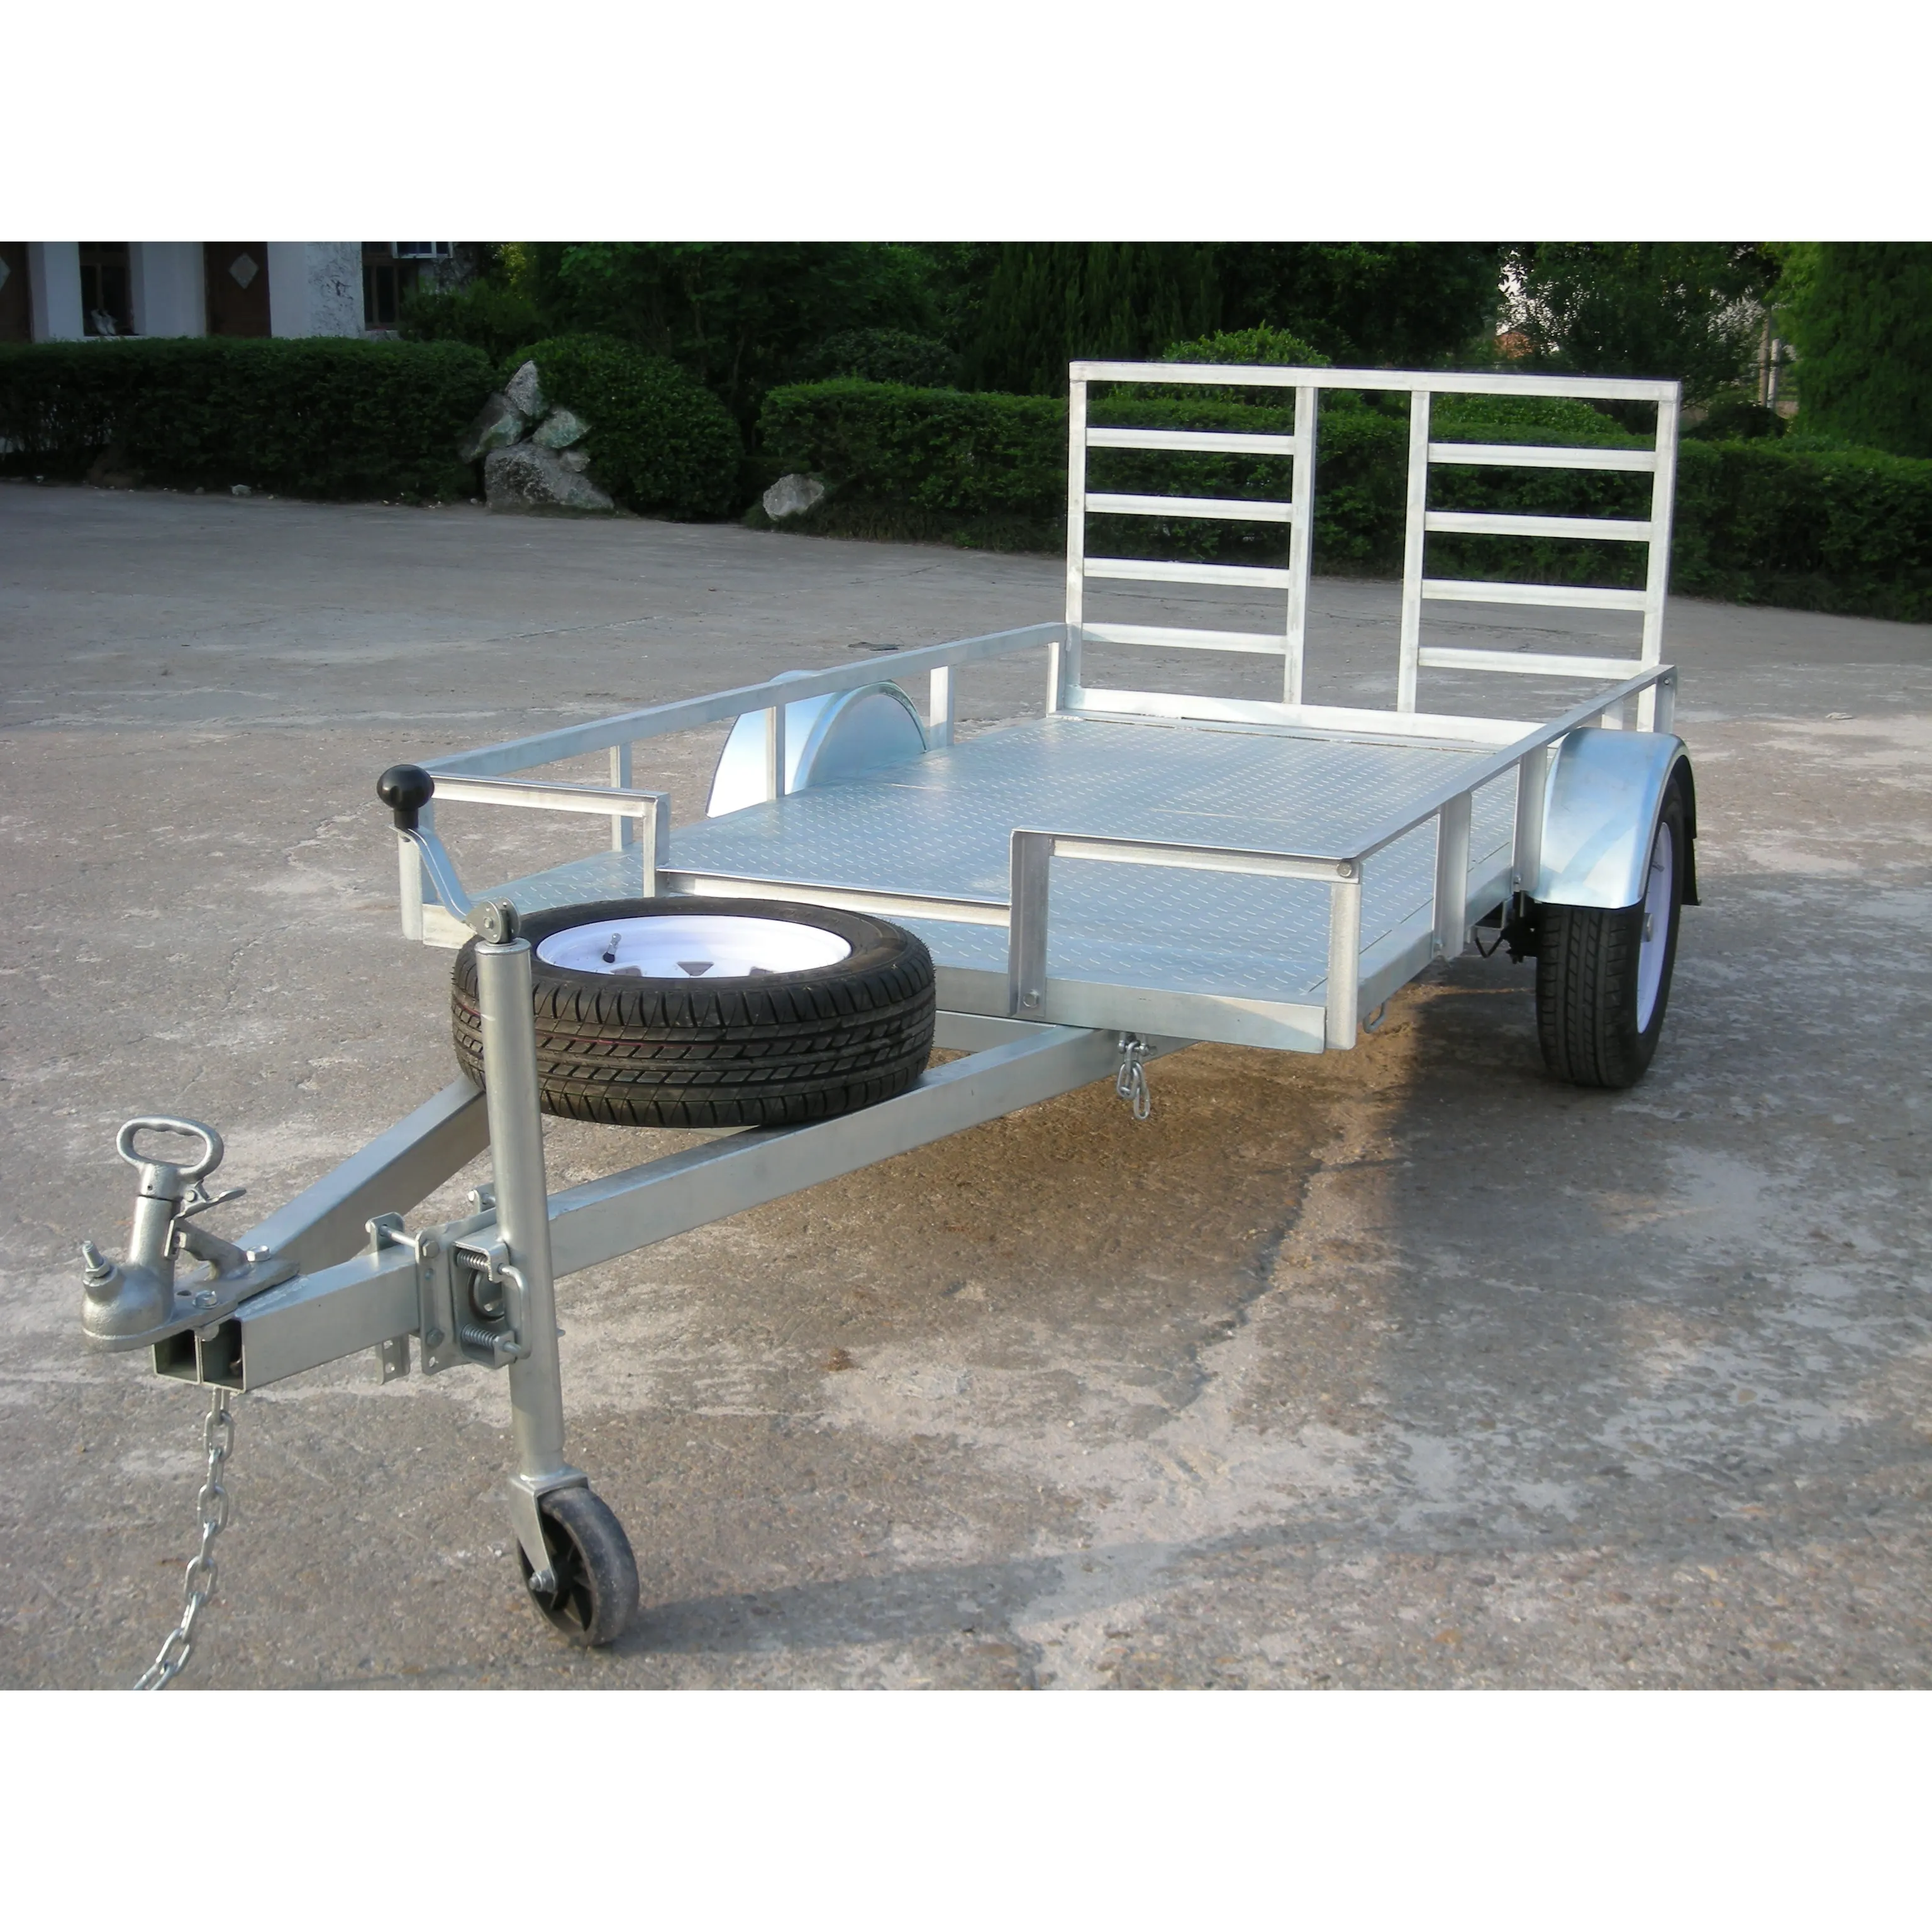 8x5 quente mergulhado galvanizado golf cart reboque motocicleta & atv trailers